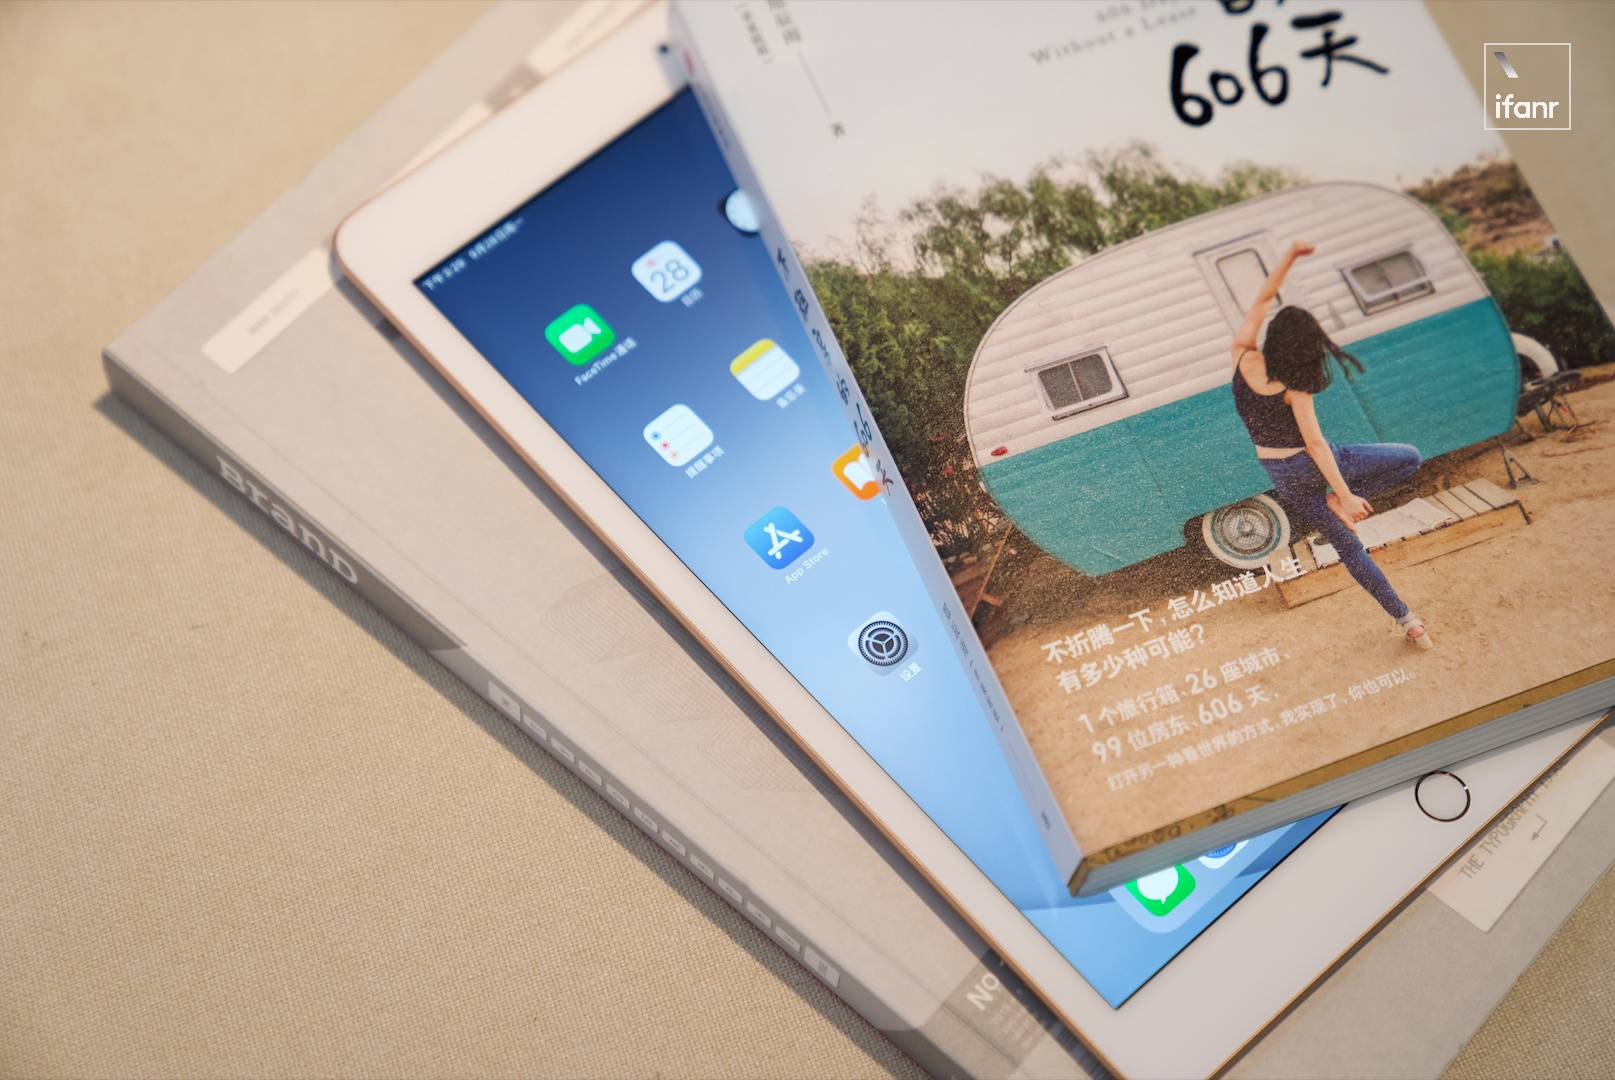 sdfe - Recensione iPad 8: anche il valore è eccezionale, potrebbe essere la prima scelta per tablet per 3000 yuan